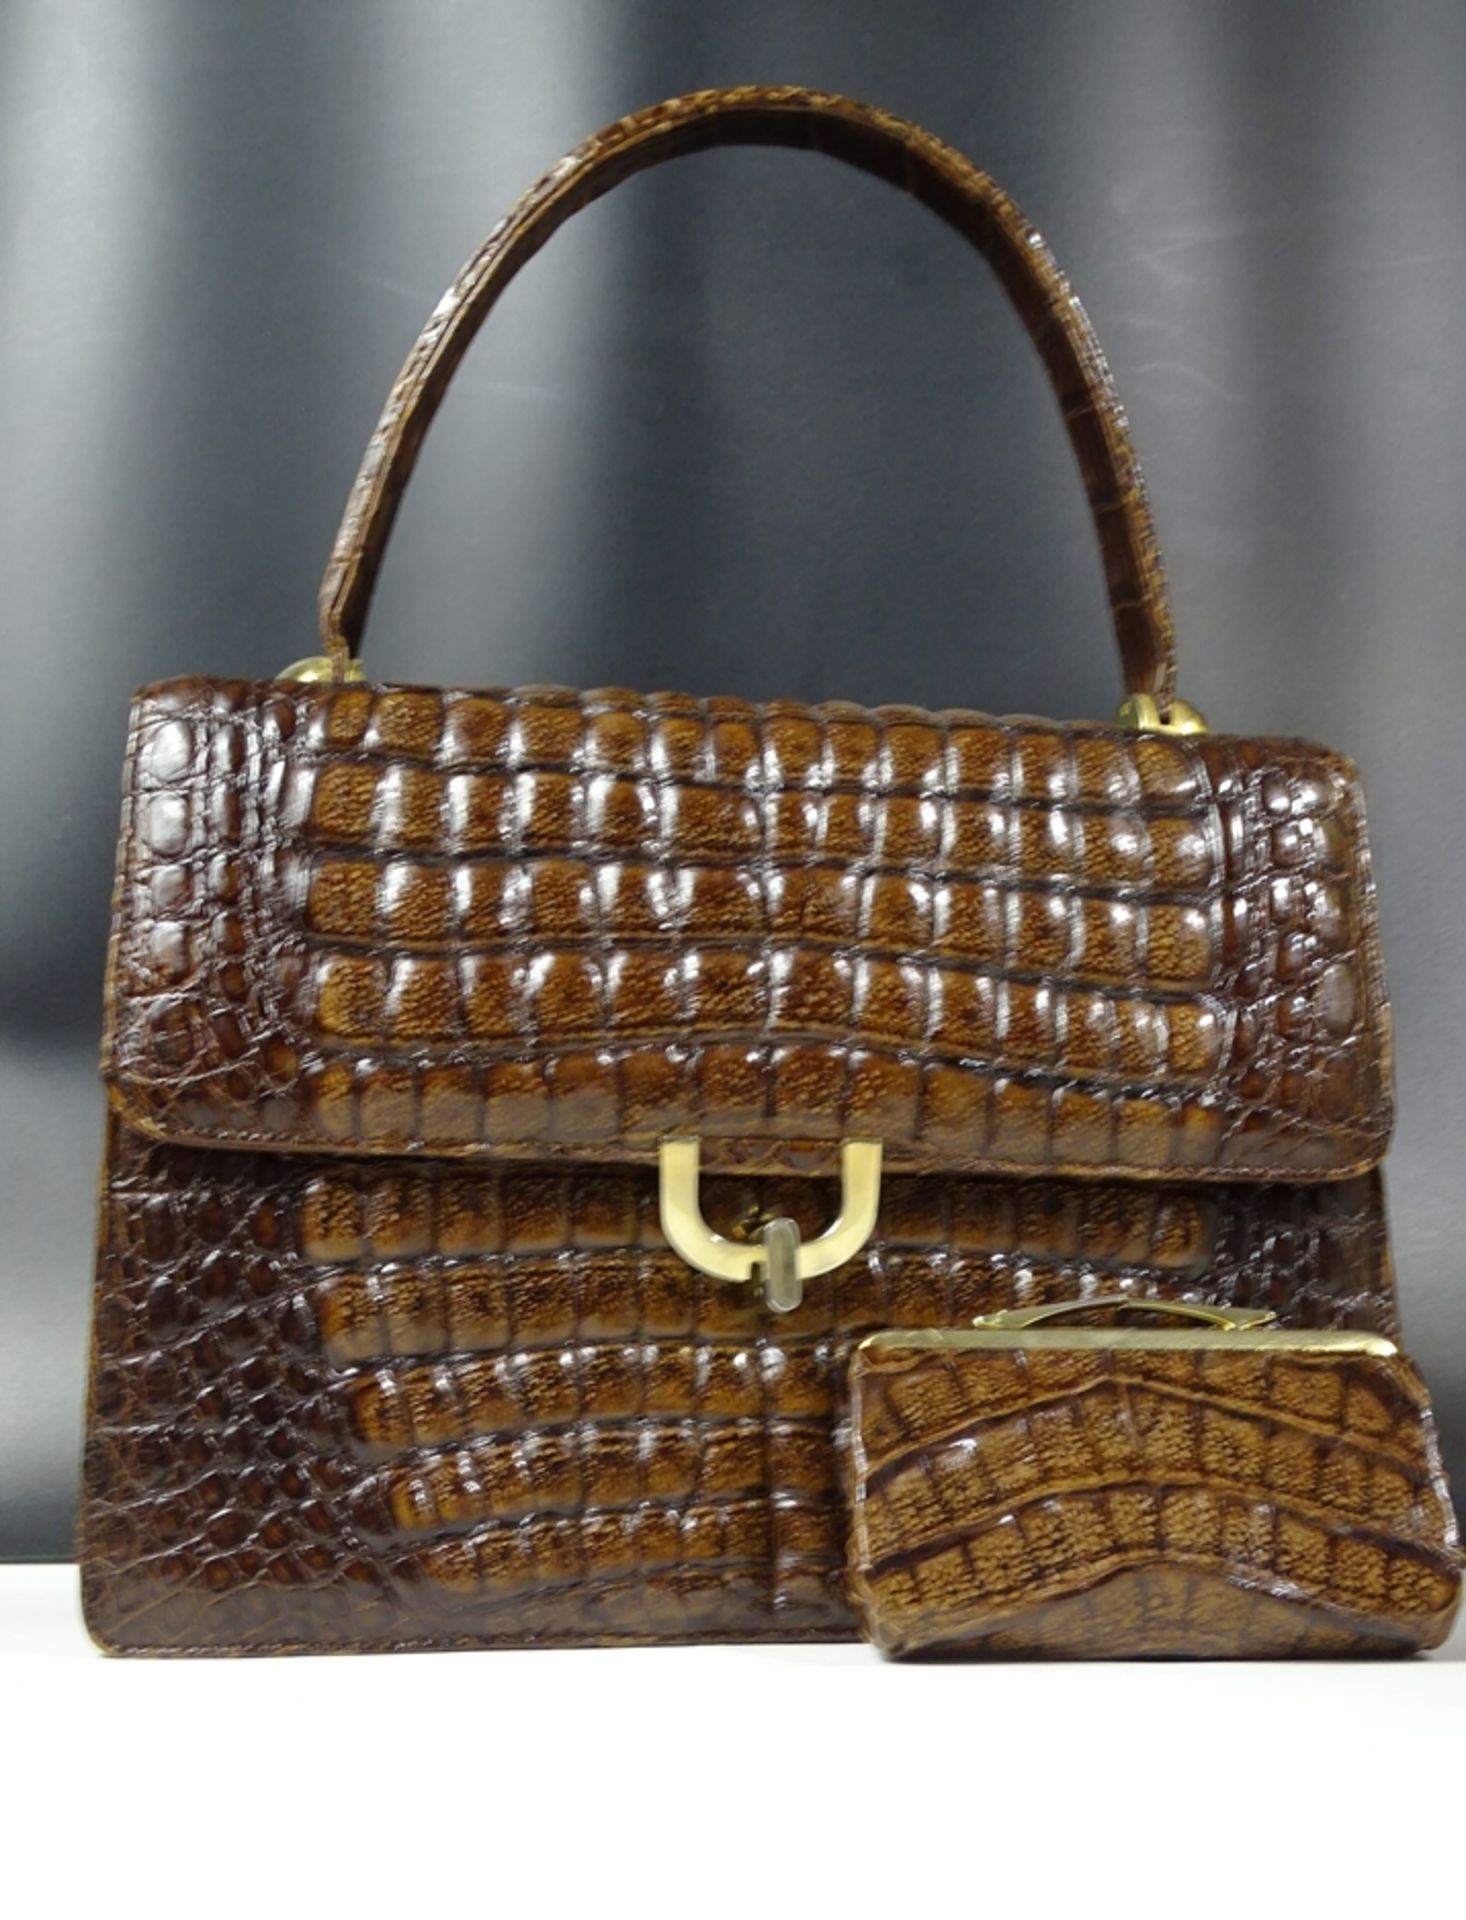 Krokoleder Handtasche mit Geldbeutel, 21x29cm - Bild 9 aus 10